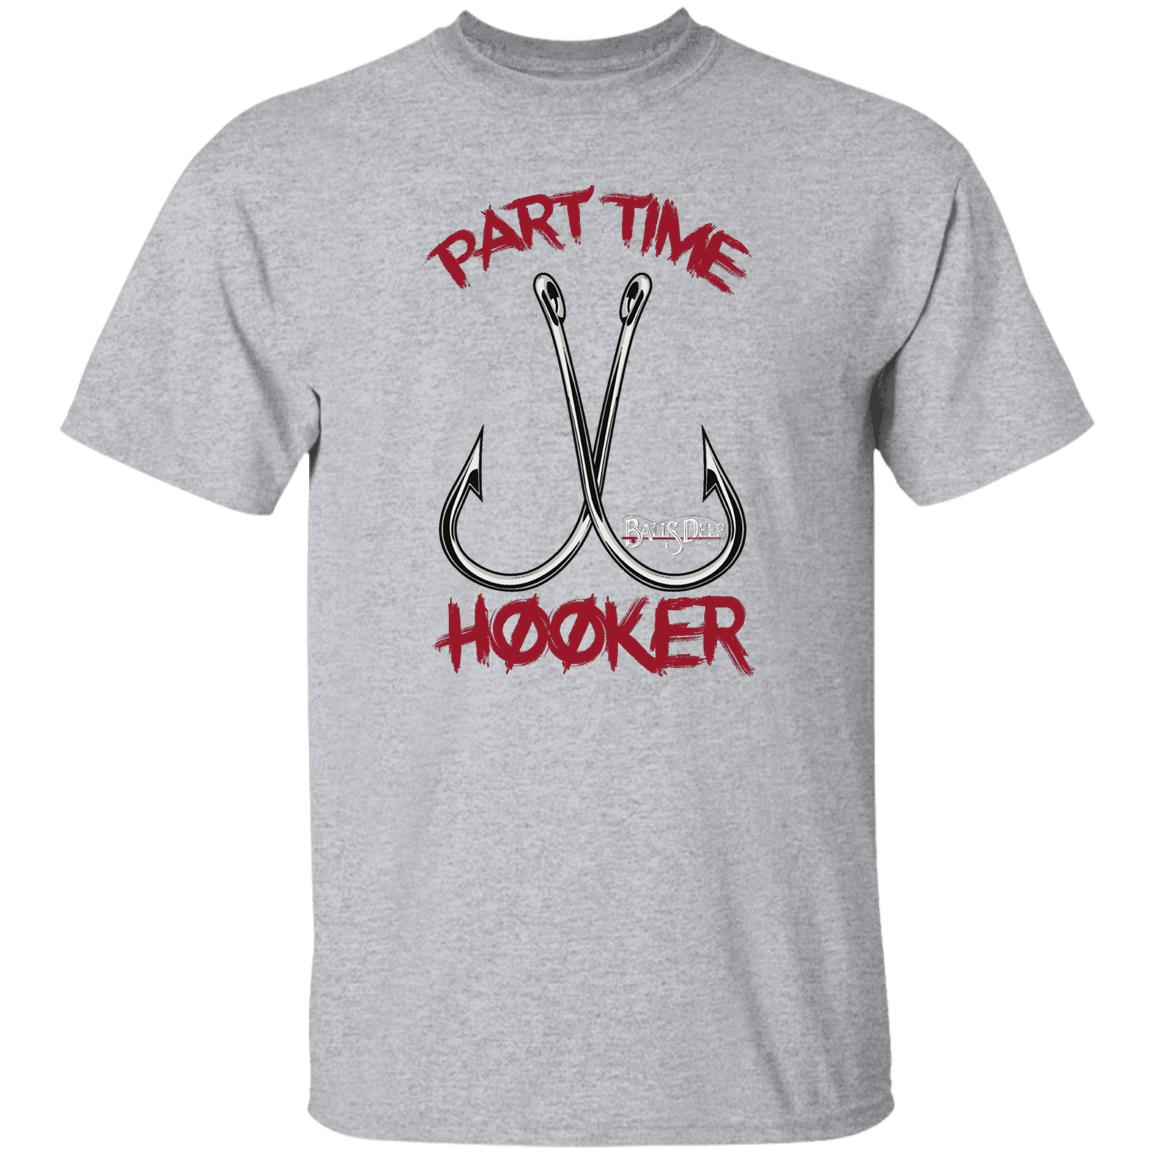 Part Time Hooker Fishing T-Shirt sold by Rajeev Ranjan